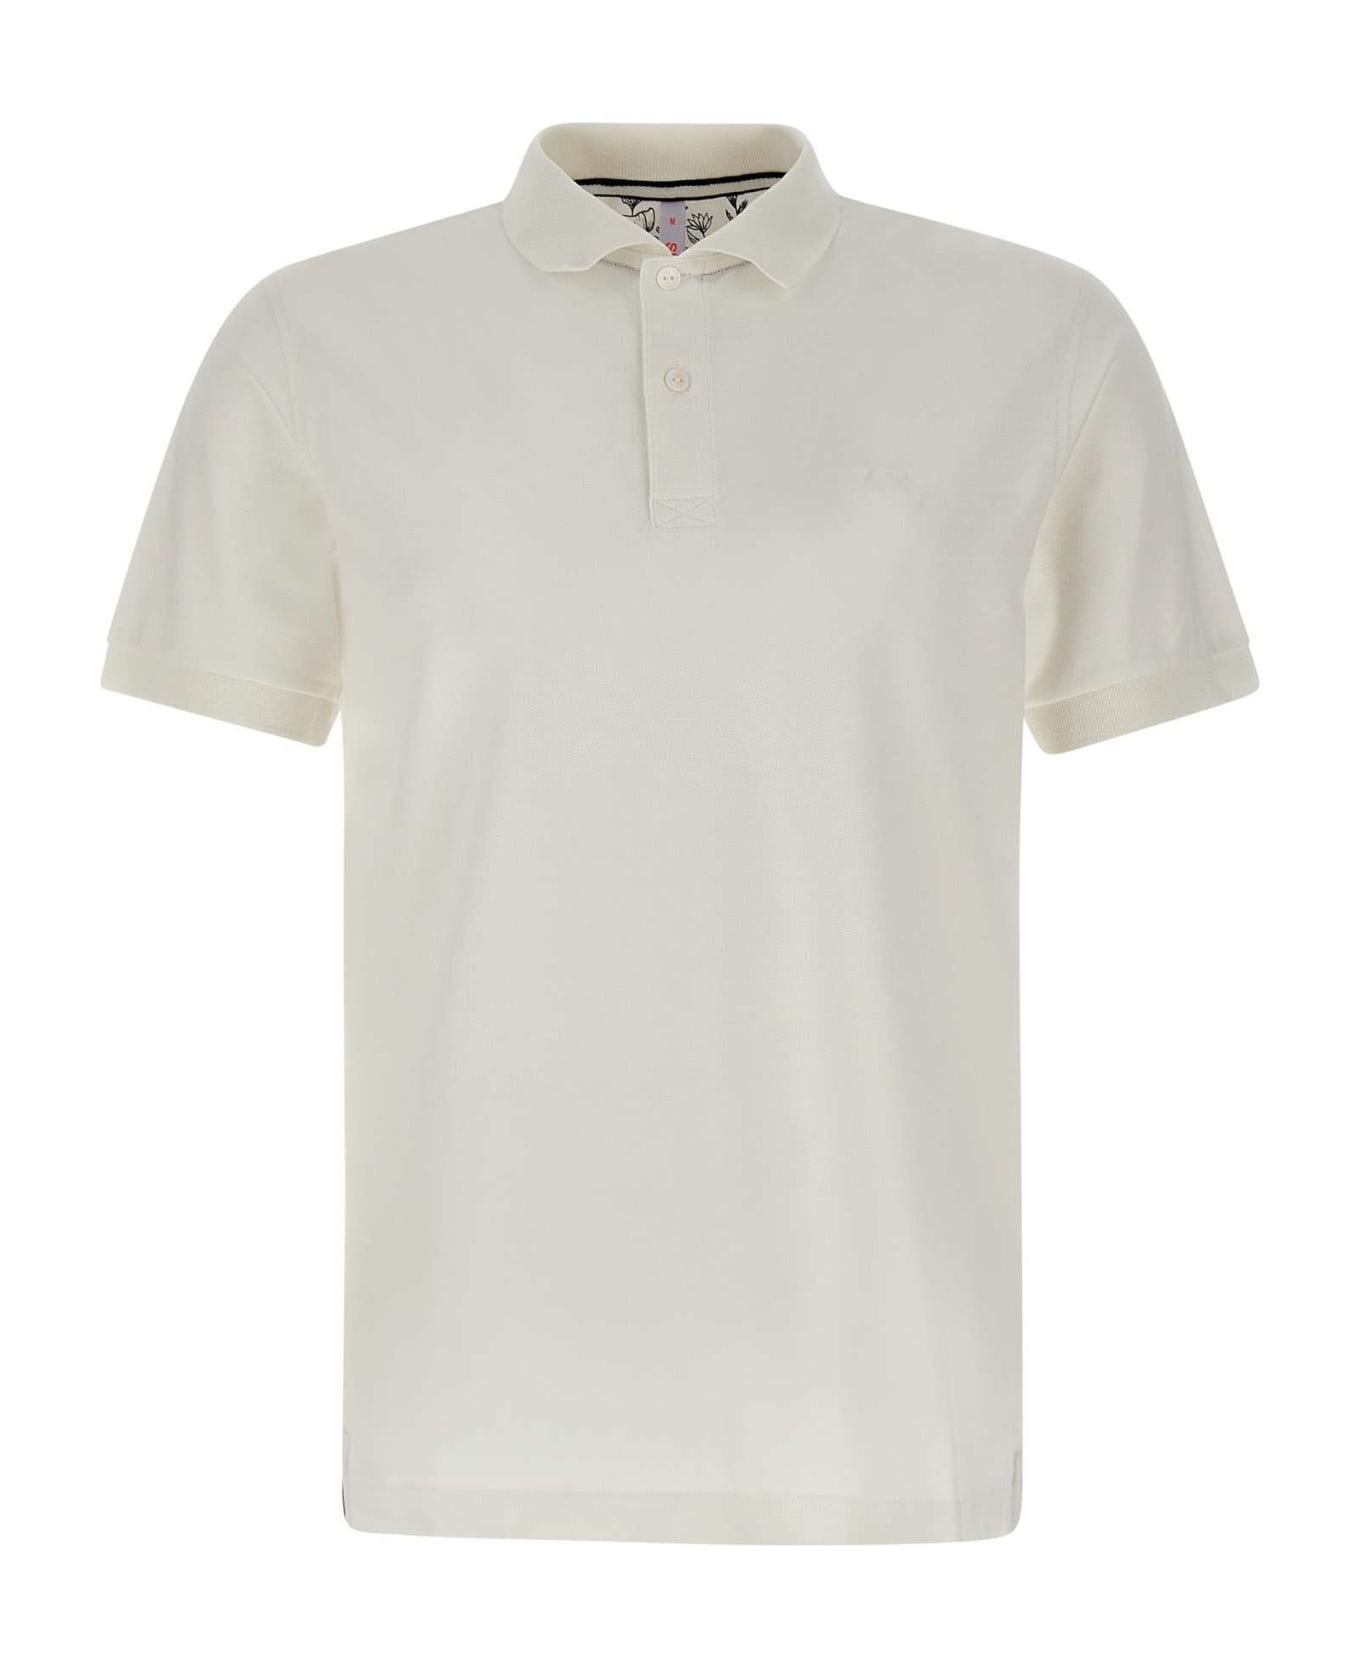 Sun 68 "cold Garment Dye" Polo Shirt Cotton - WHITE